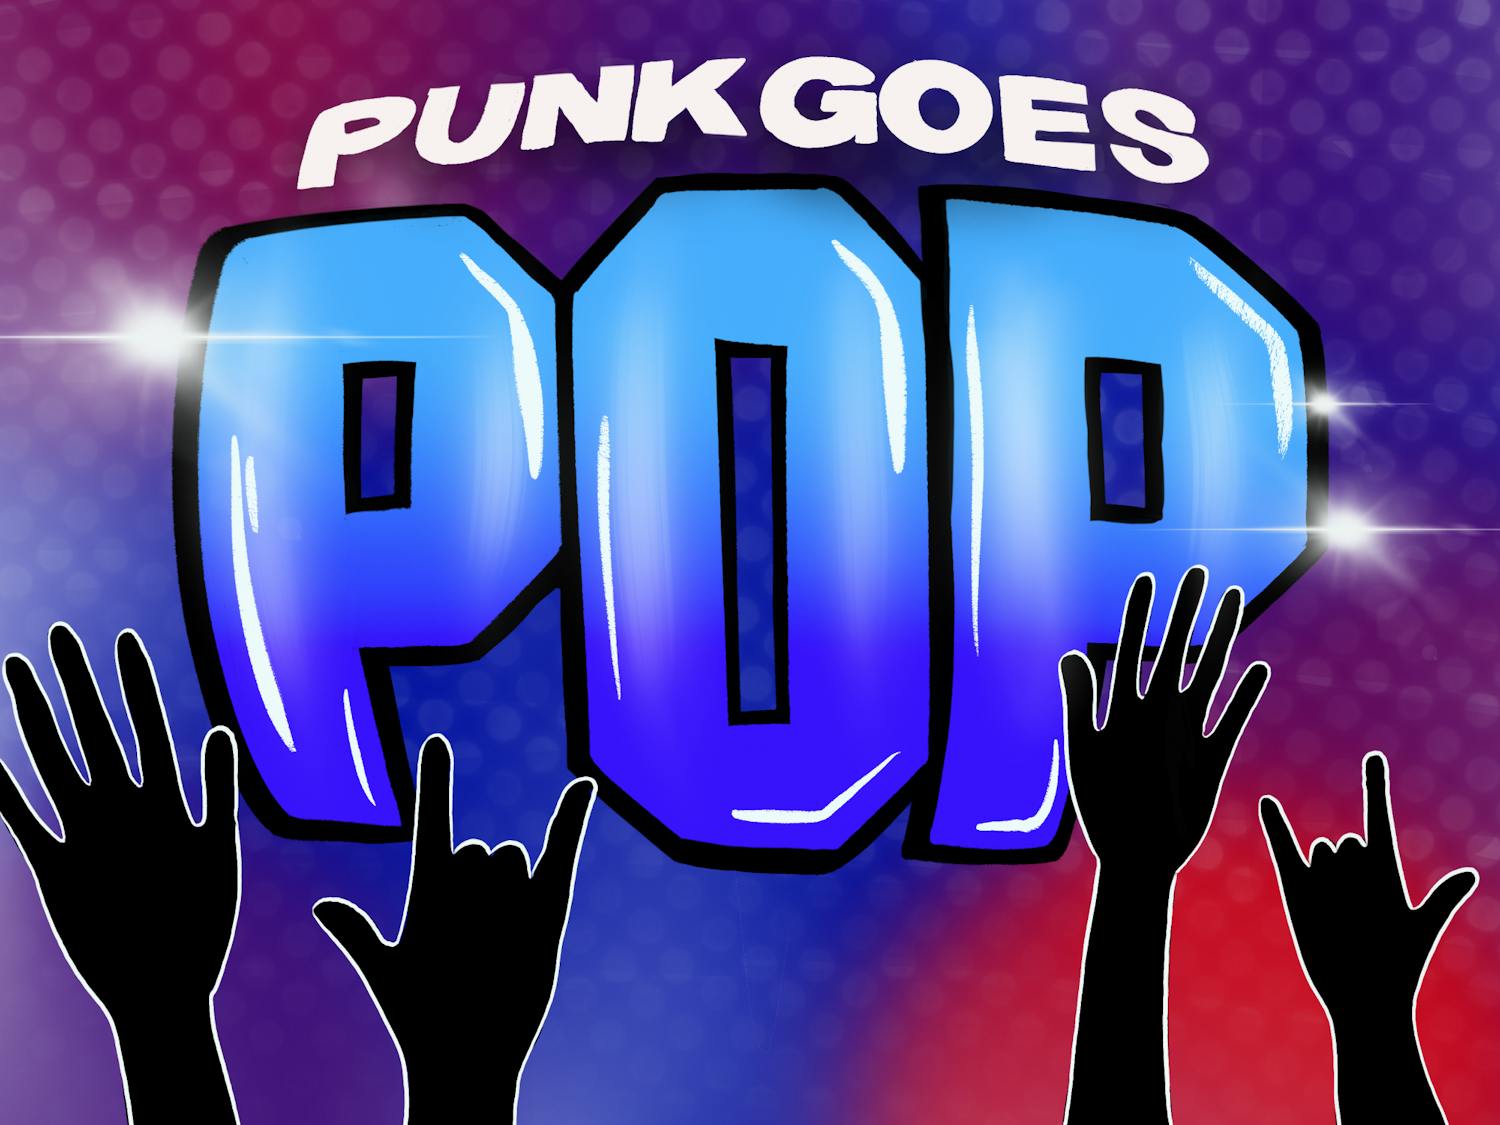 PHILLIPS_Top 10 best "Punk Goes Pop" songs_LA.png